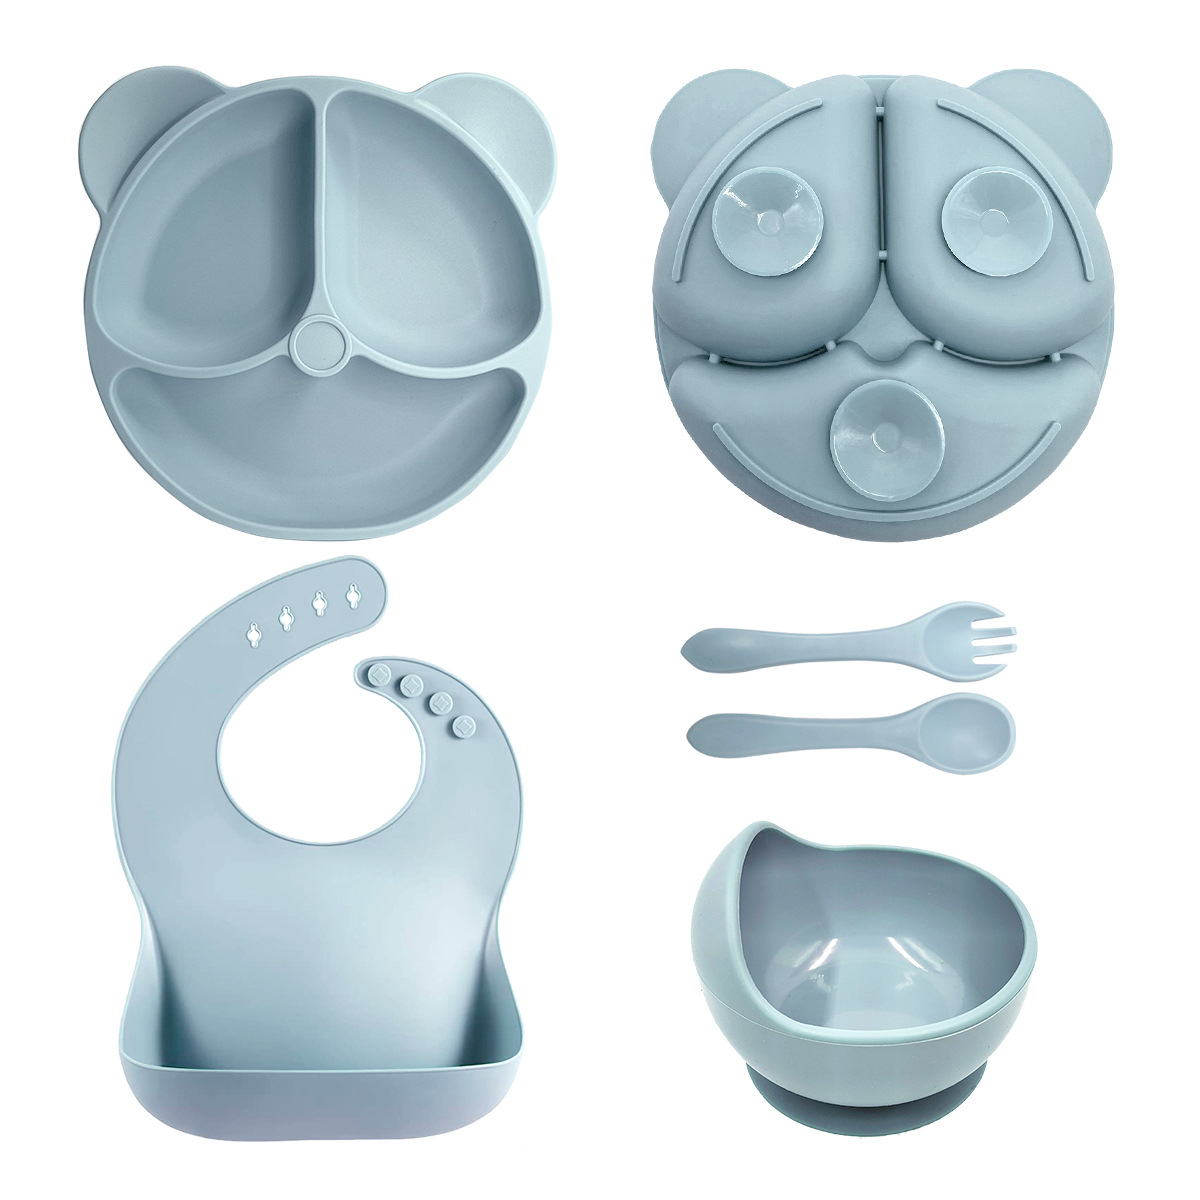 小熊硅胶餐具 婴儿硅胶辅食套装 宝宝叉勺一体式硅胶餐盘套装